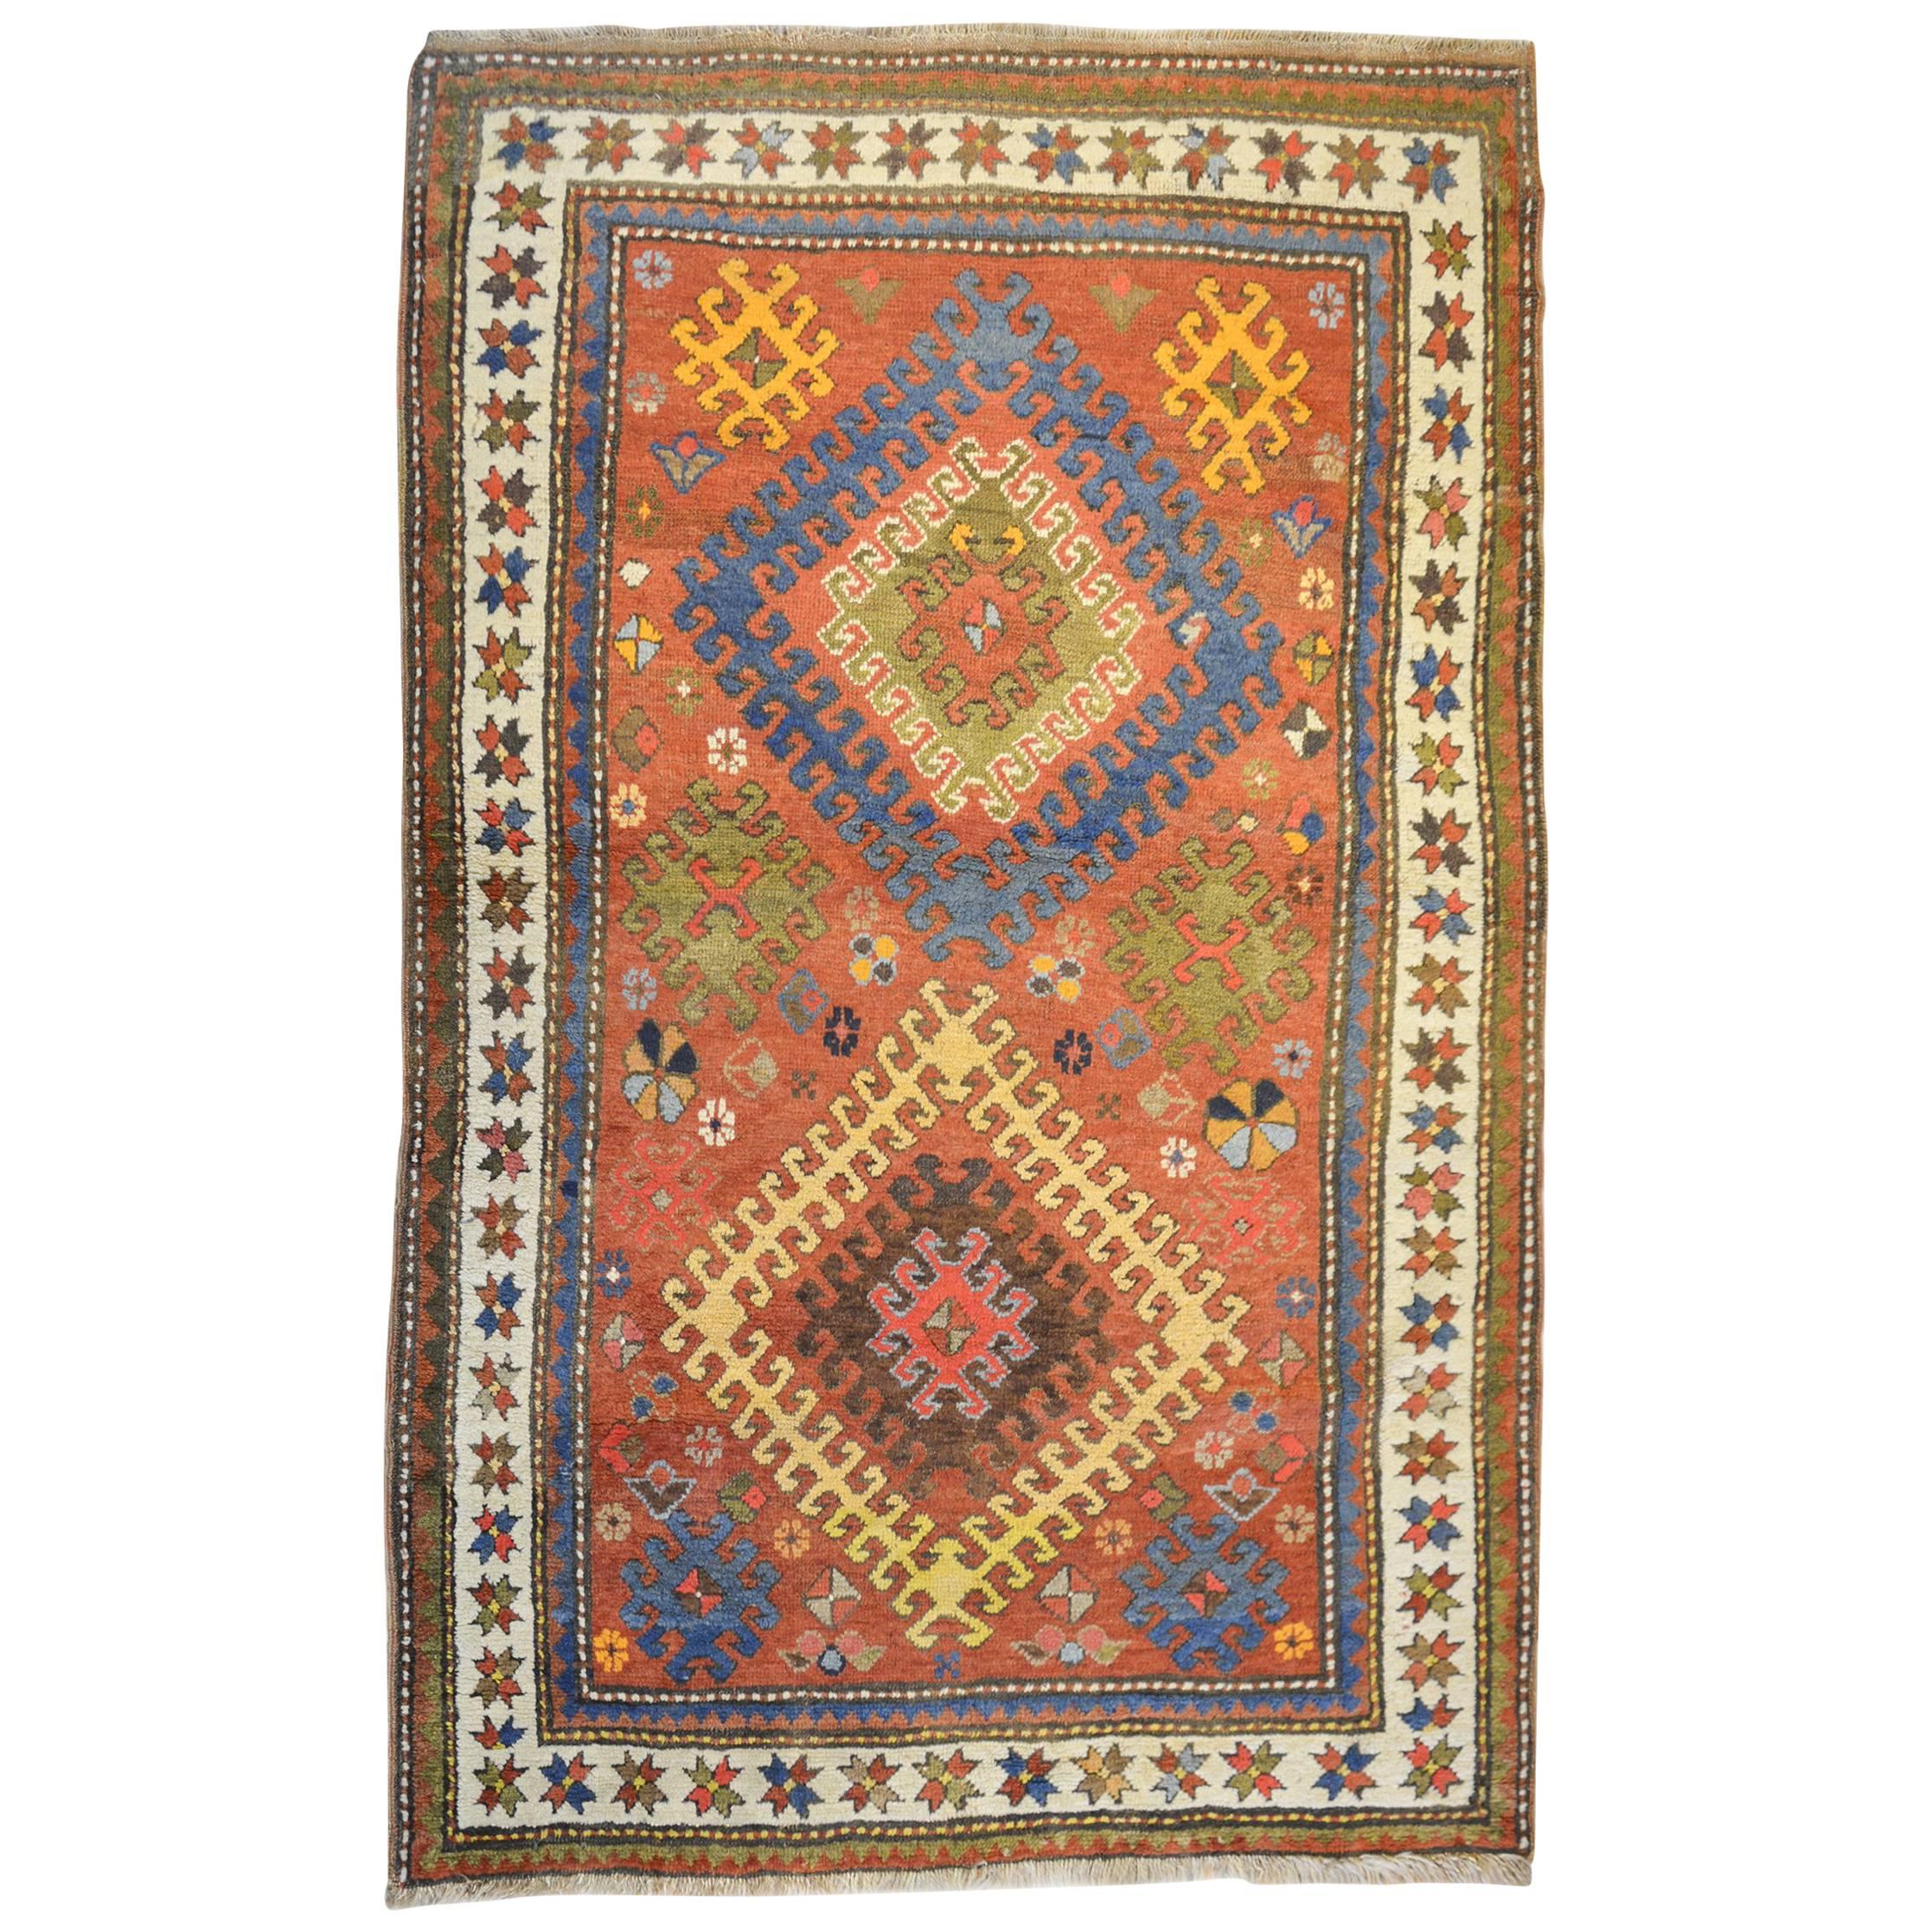 Incroyable tapis Kazak du début du XXe siècle